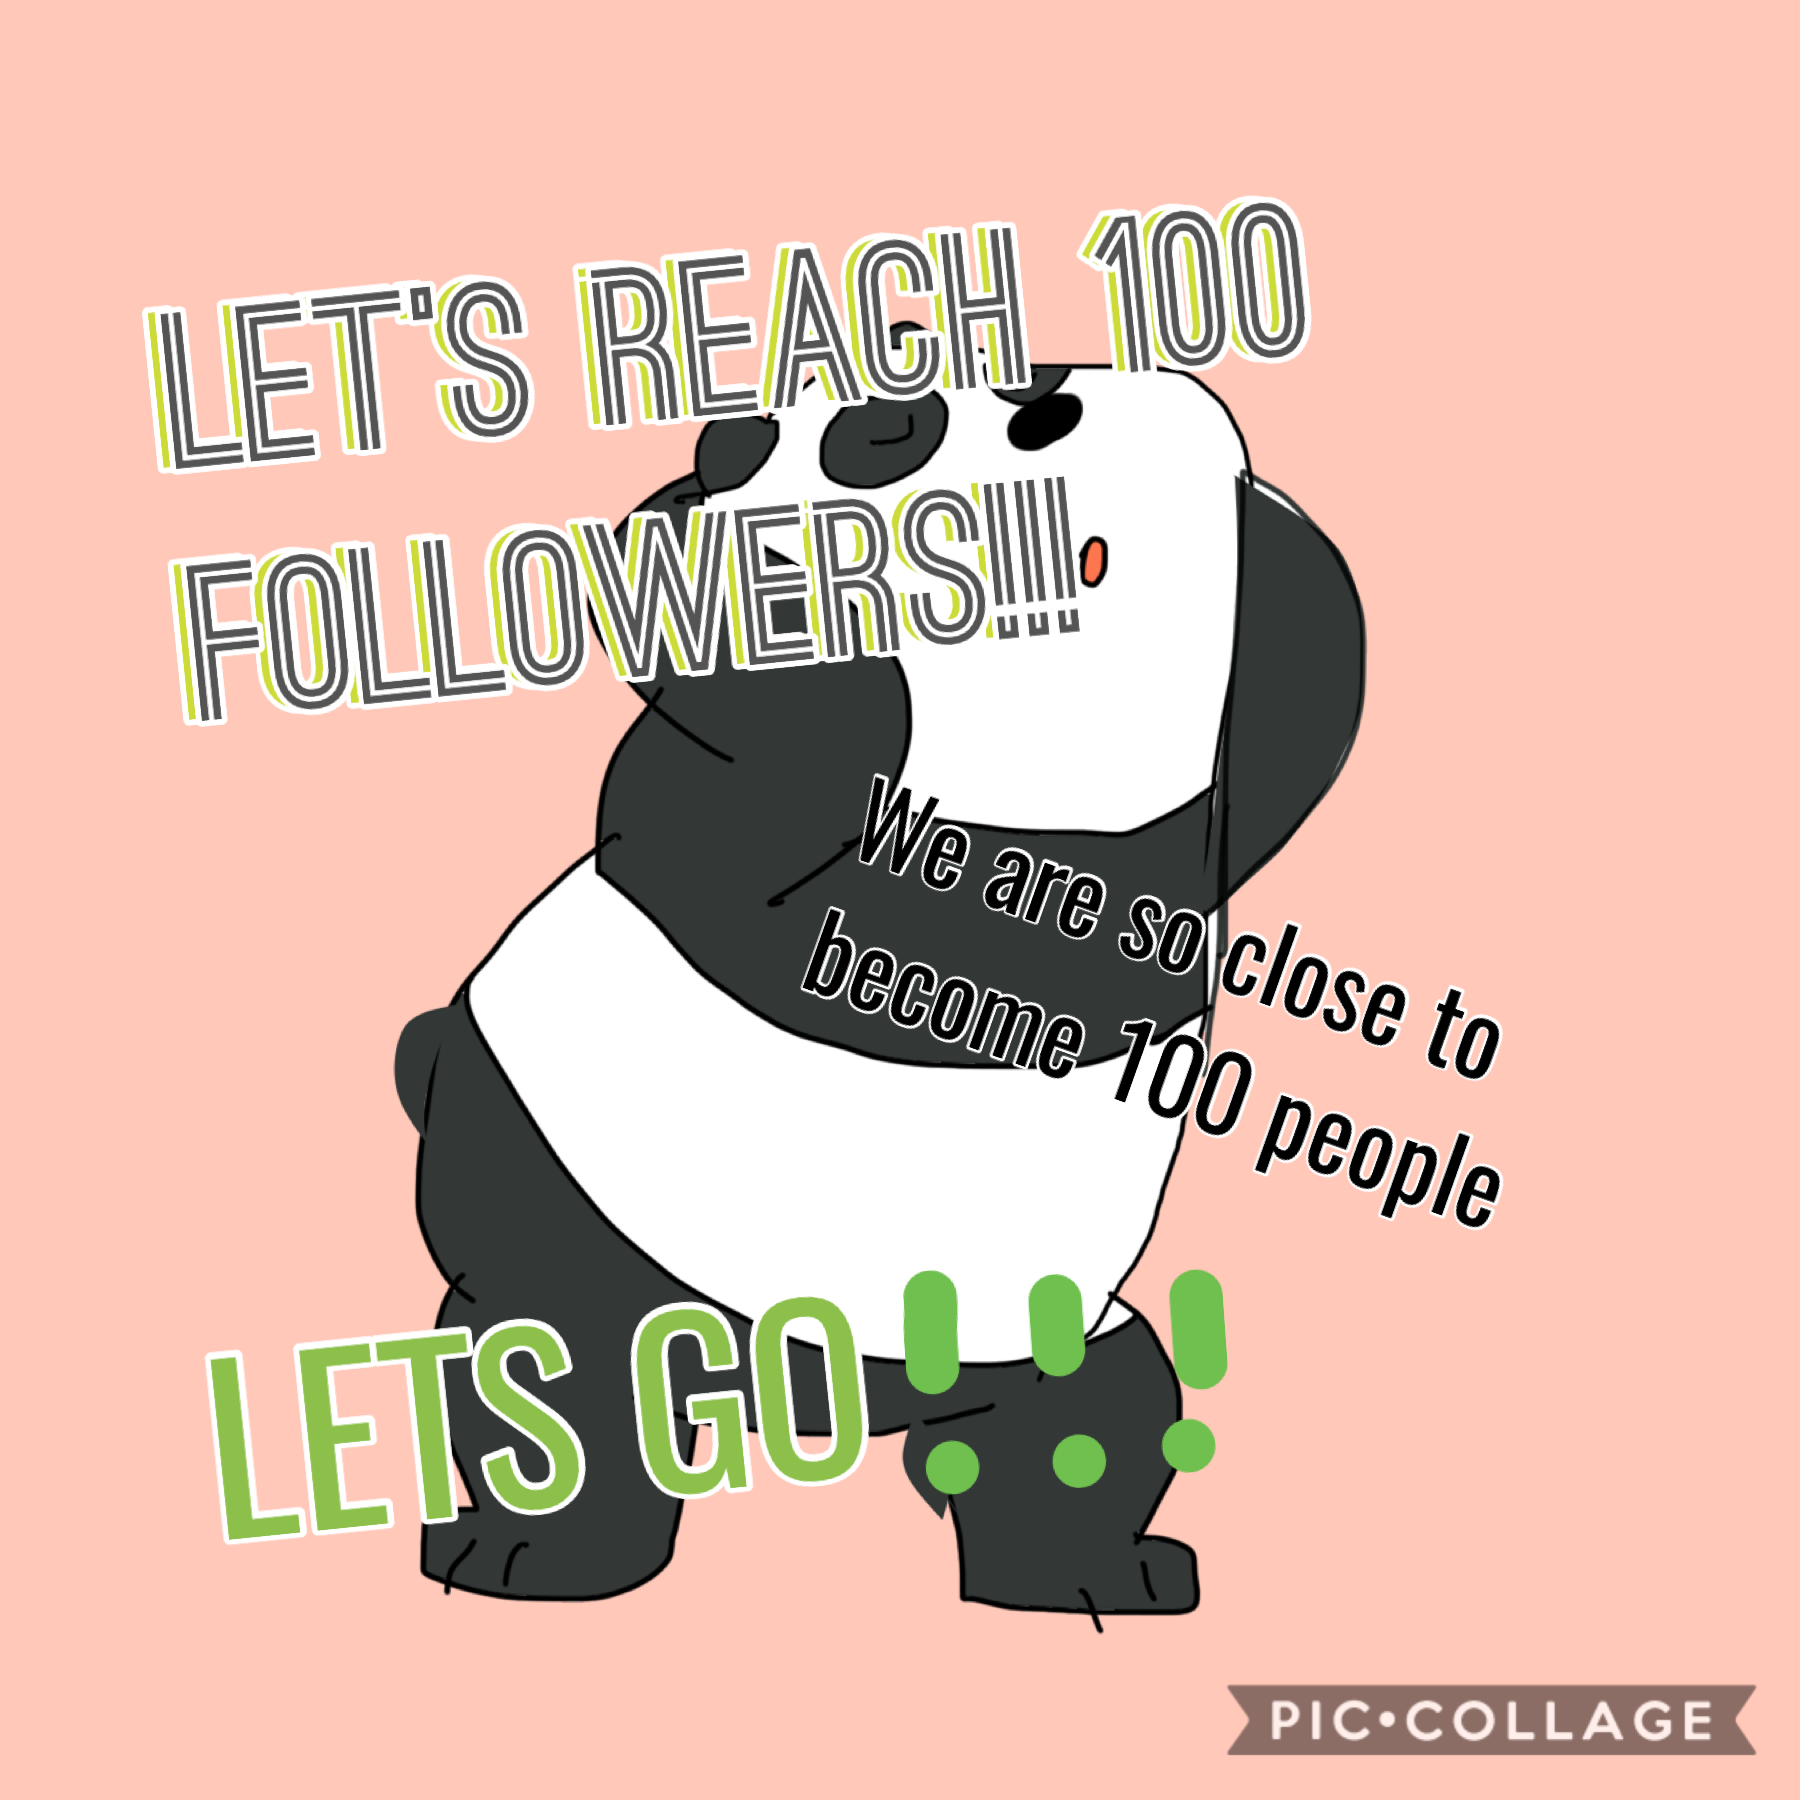 Let’s reach 100 please!!!